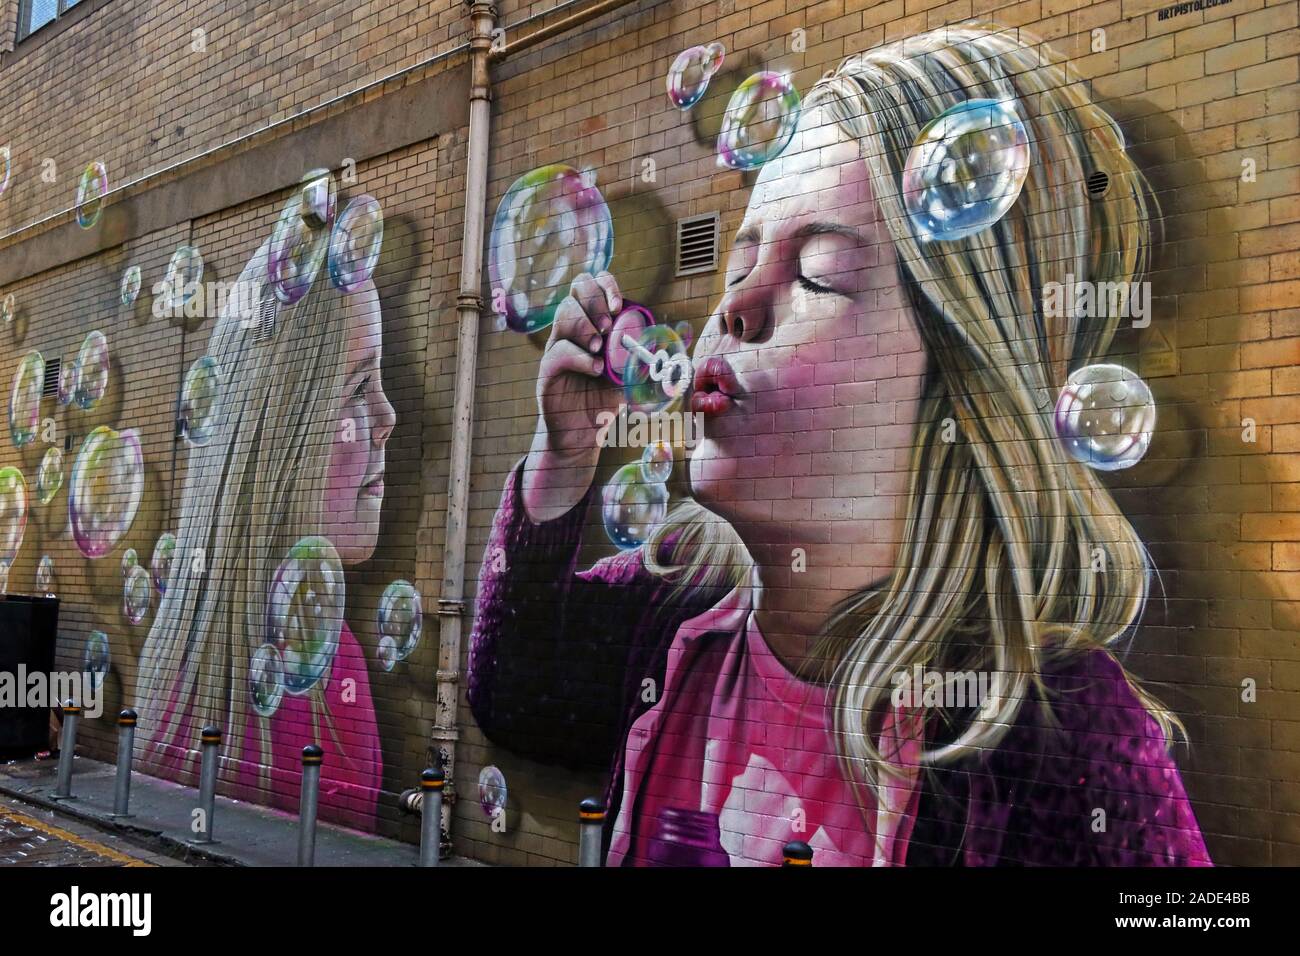 Fille soufflant des bulles, œuvre peinte, par Rogue et Art Pistol 2019, Renfield Lane, Glasgow, Écosse, Royaume-Uni, G2 5AR Banque D'Images